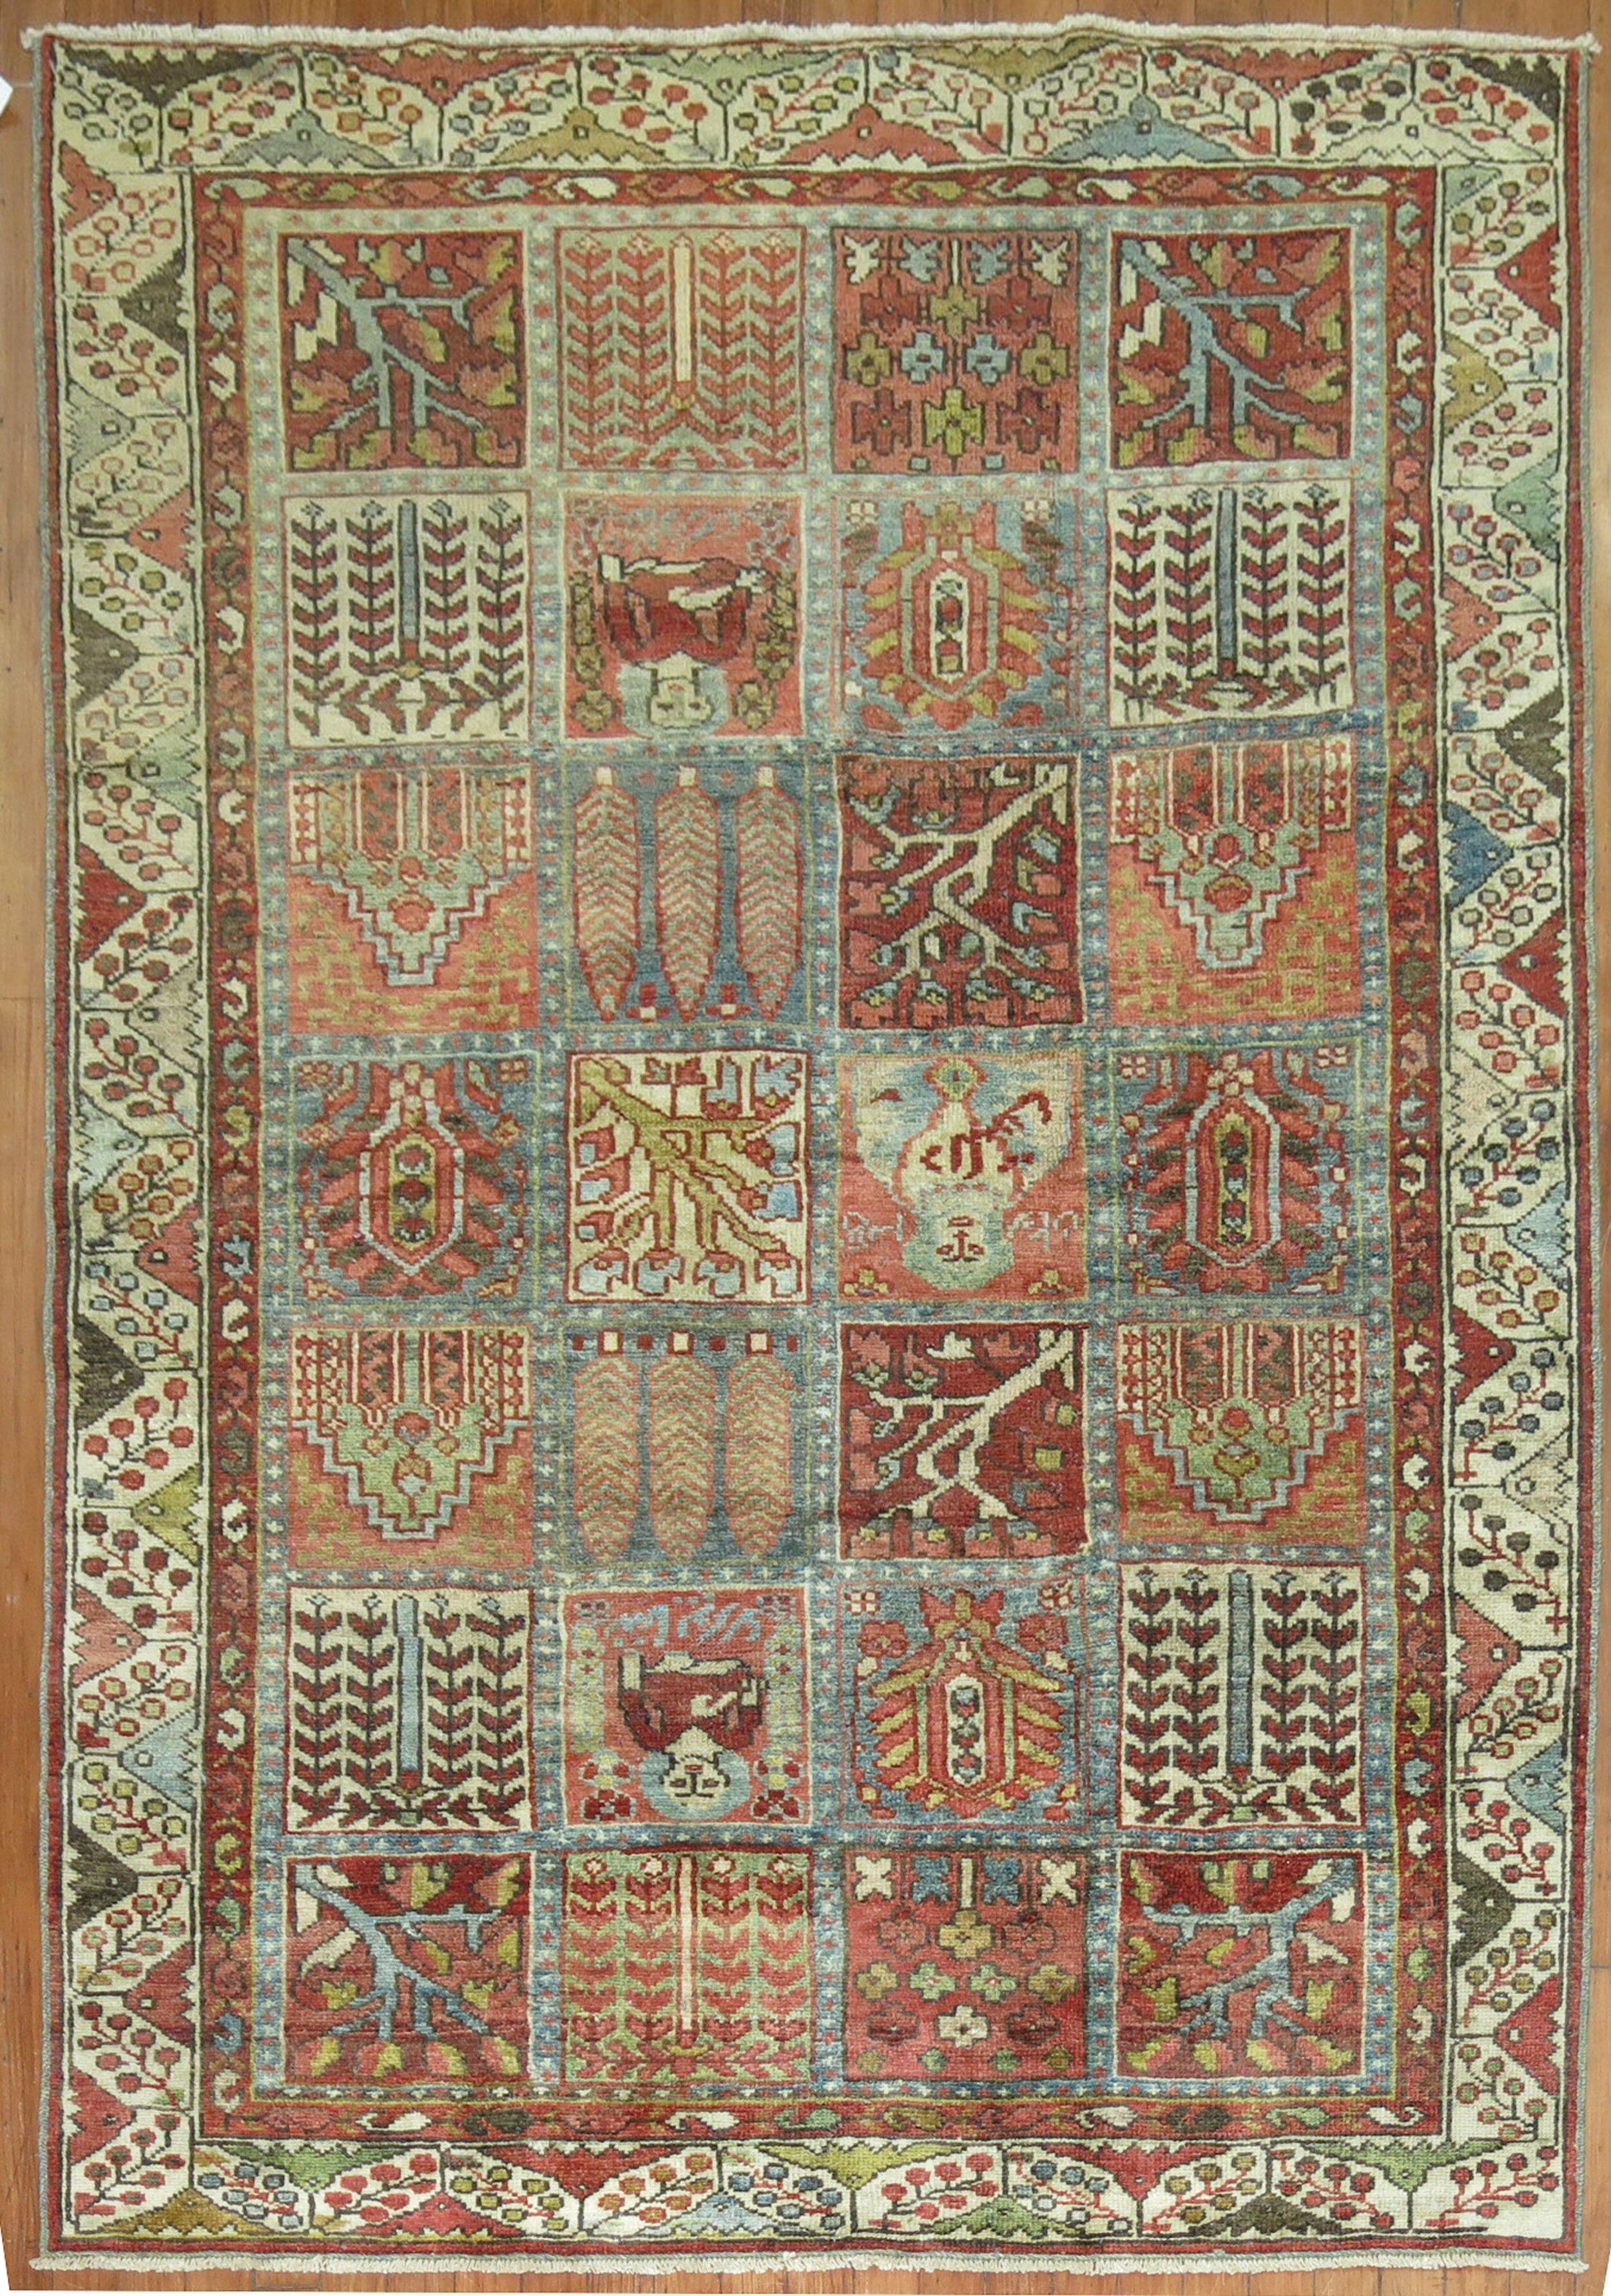 Persischer Malayer-Teppich in Akzentgröße aus dem frühen 20. Jahrhundert mit einem Gartenkästchen-Muster in einer Reihe von Farben

Maße: 4'5